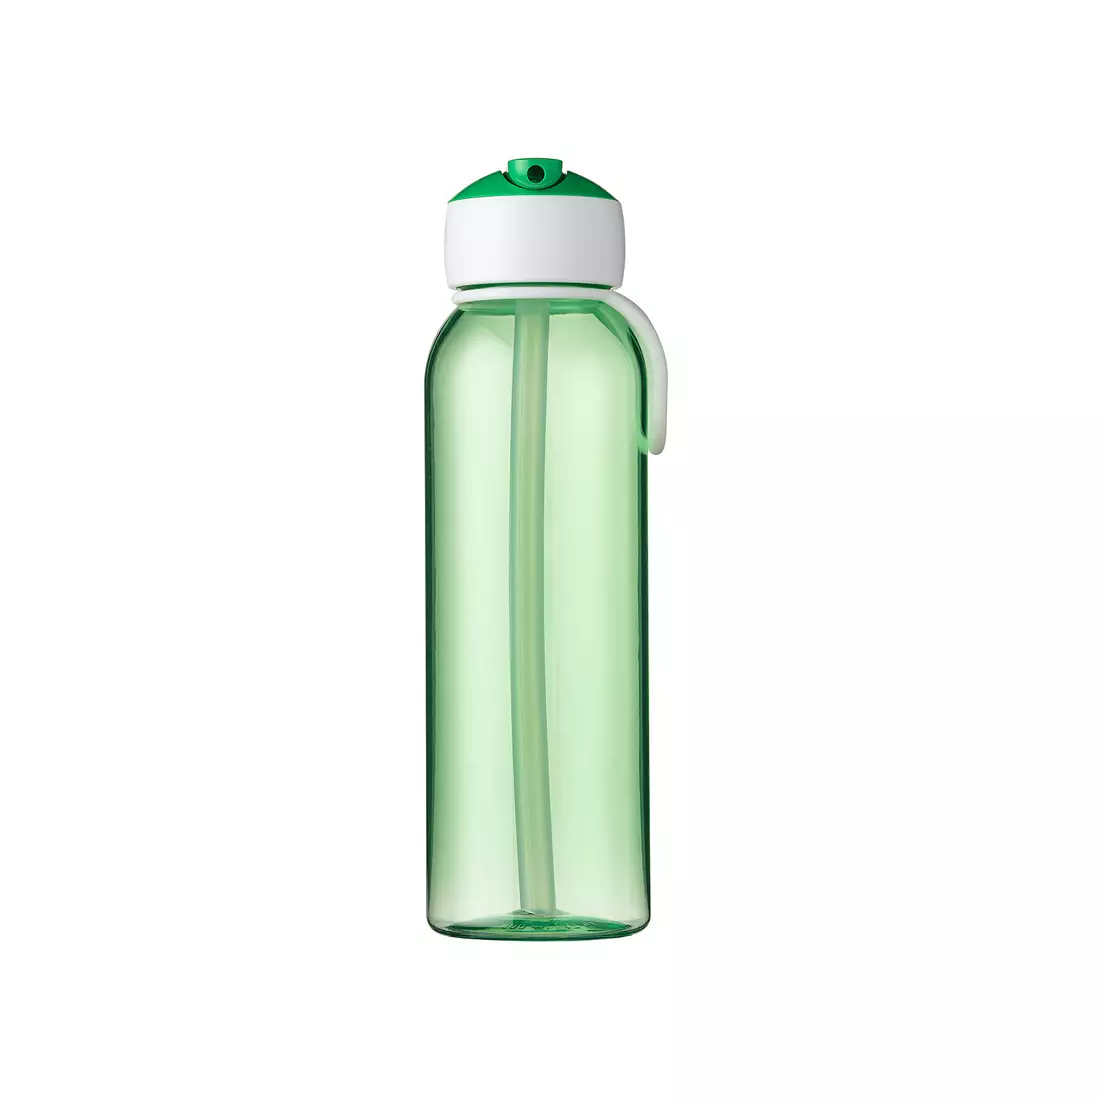 MEPAL FLIP-UP CAMPUS 500 ml wasserflasche, grün